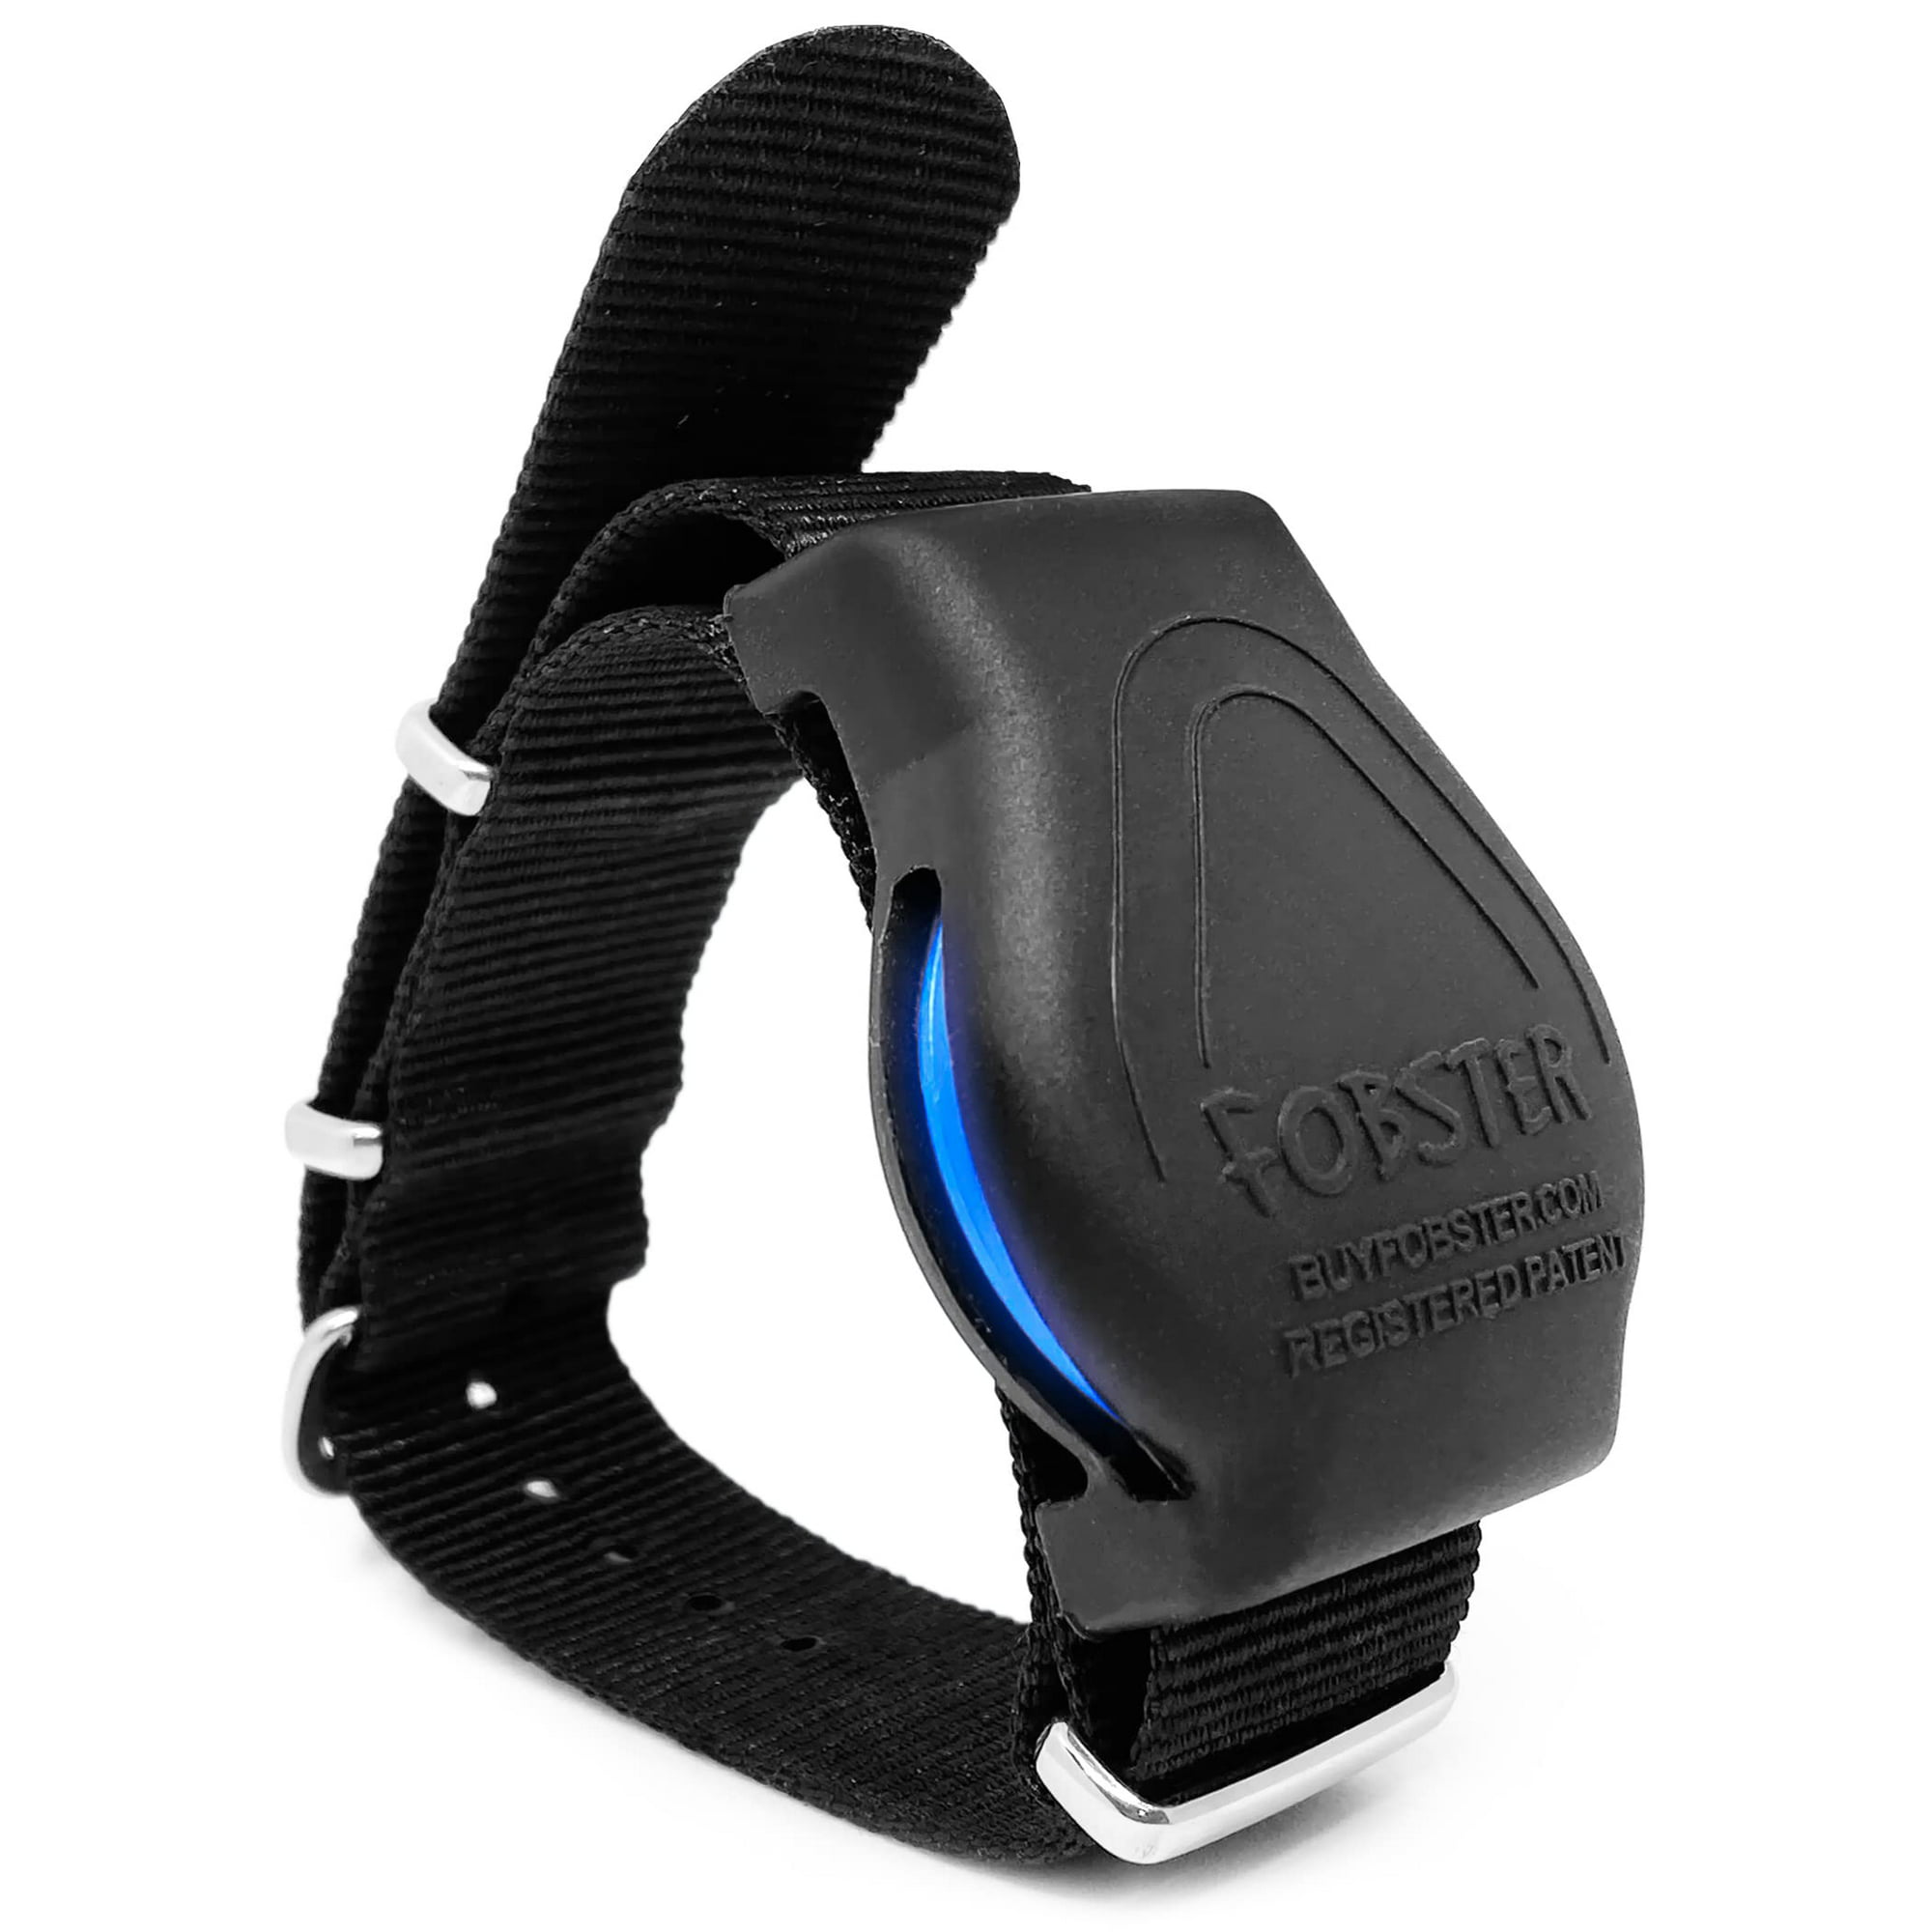 Fobster Key Fob Bracelet HID RFID Key Fob Wristband Fob Holder